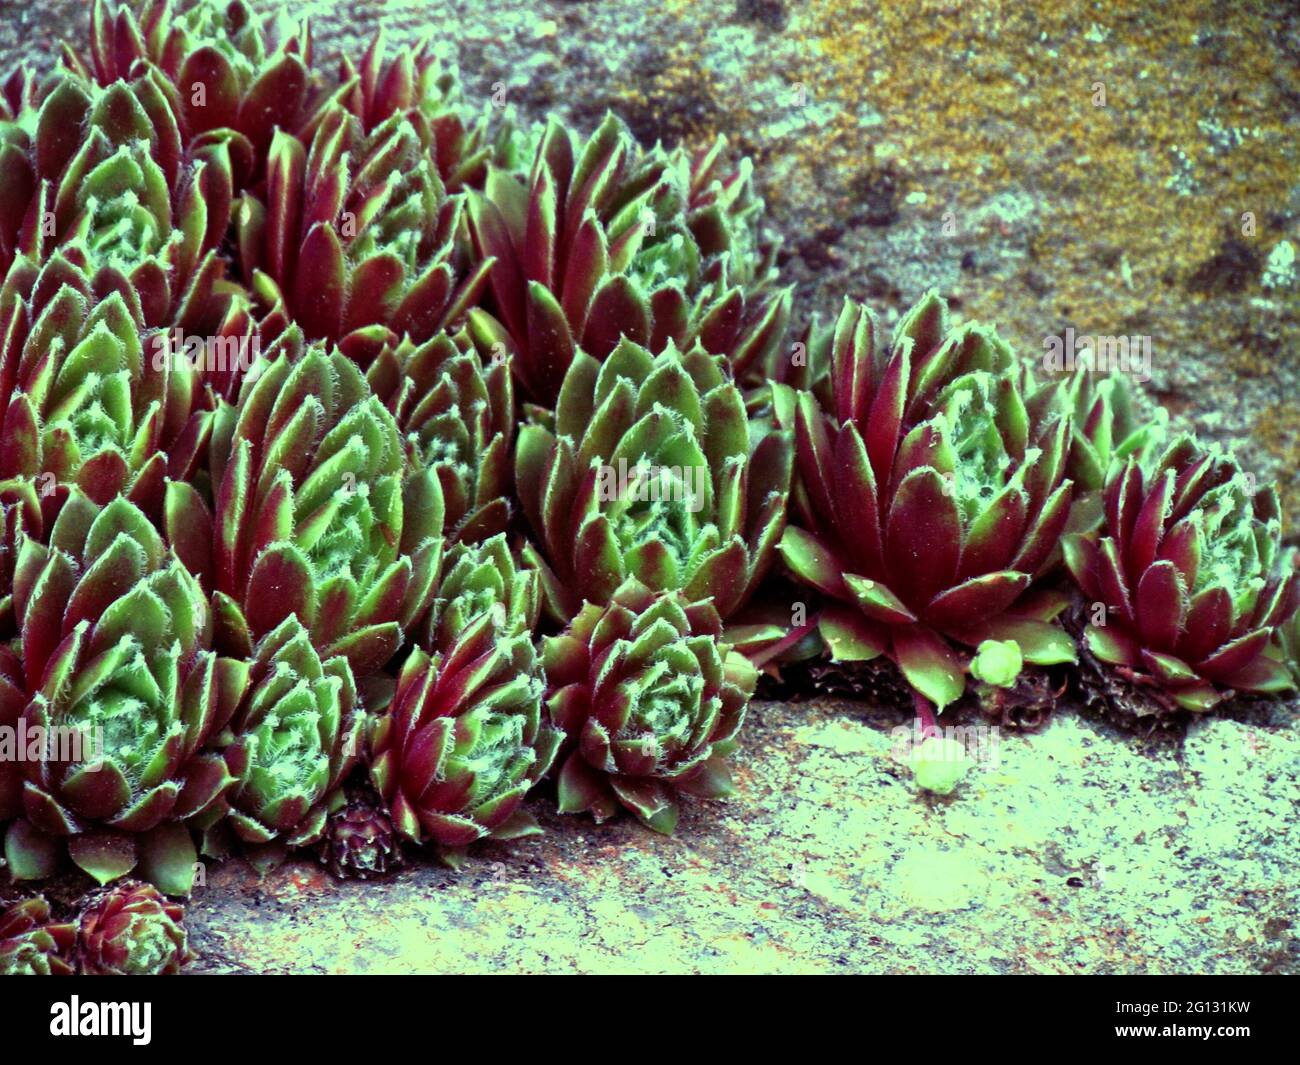 Rot gefärbte Sorte von sempervivum, eine bekannte Heilpflanze, Botanik-Thema Stockfoto